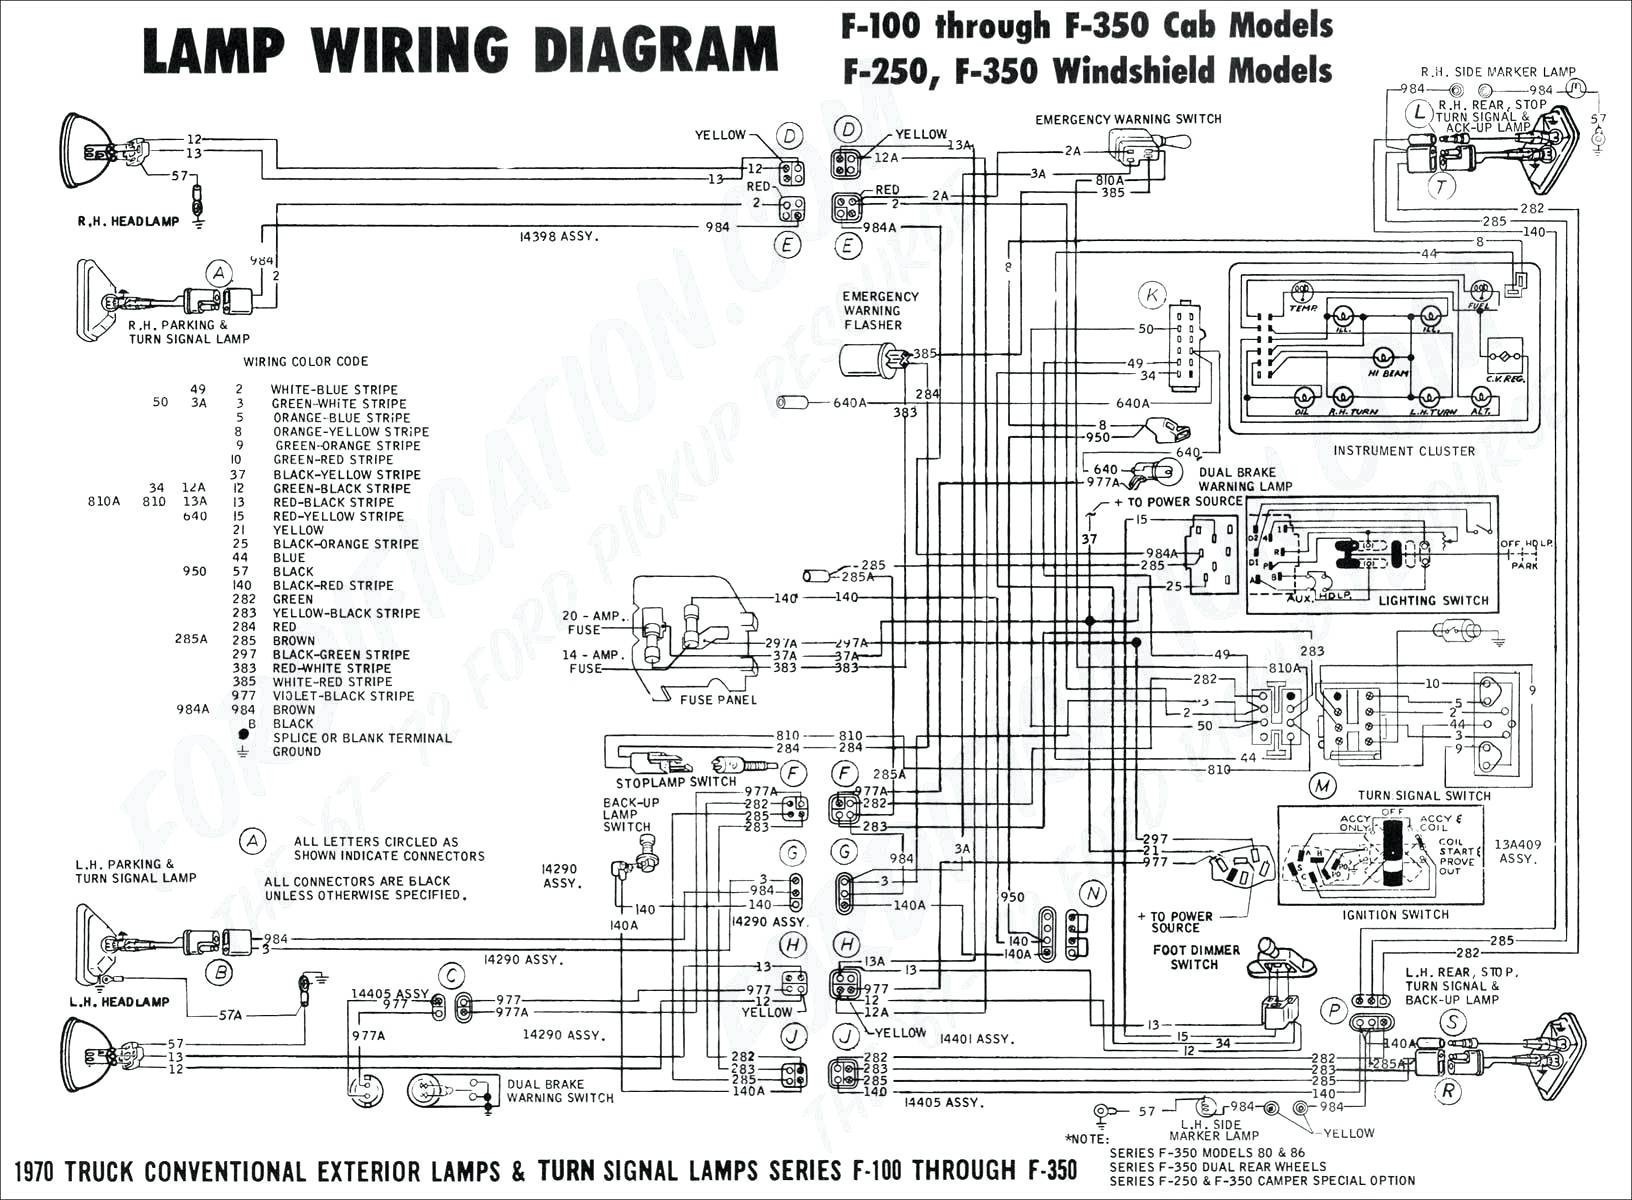 4 Way Switch Wiring Diagram Wiring Diagram Deutsch – Electrical Wiring Diagram Building Of 4 Way Switch Wiring Diagram